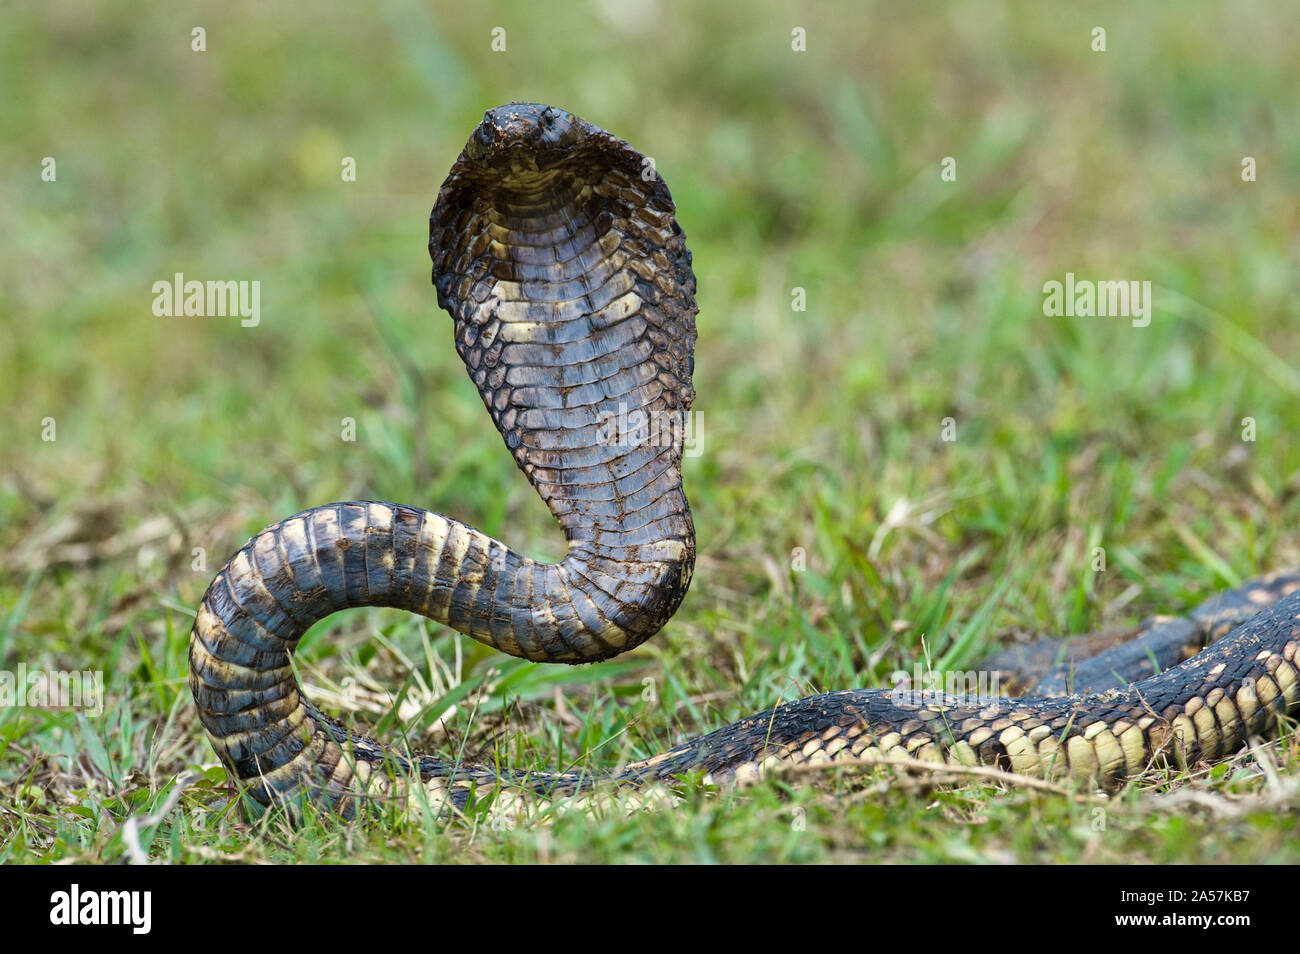 Nahaufnahme eines ägyptischen Cobra (Heloderma horridum) Aufzucht, Lake Victoria, Uganda Stockfoto